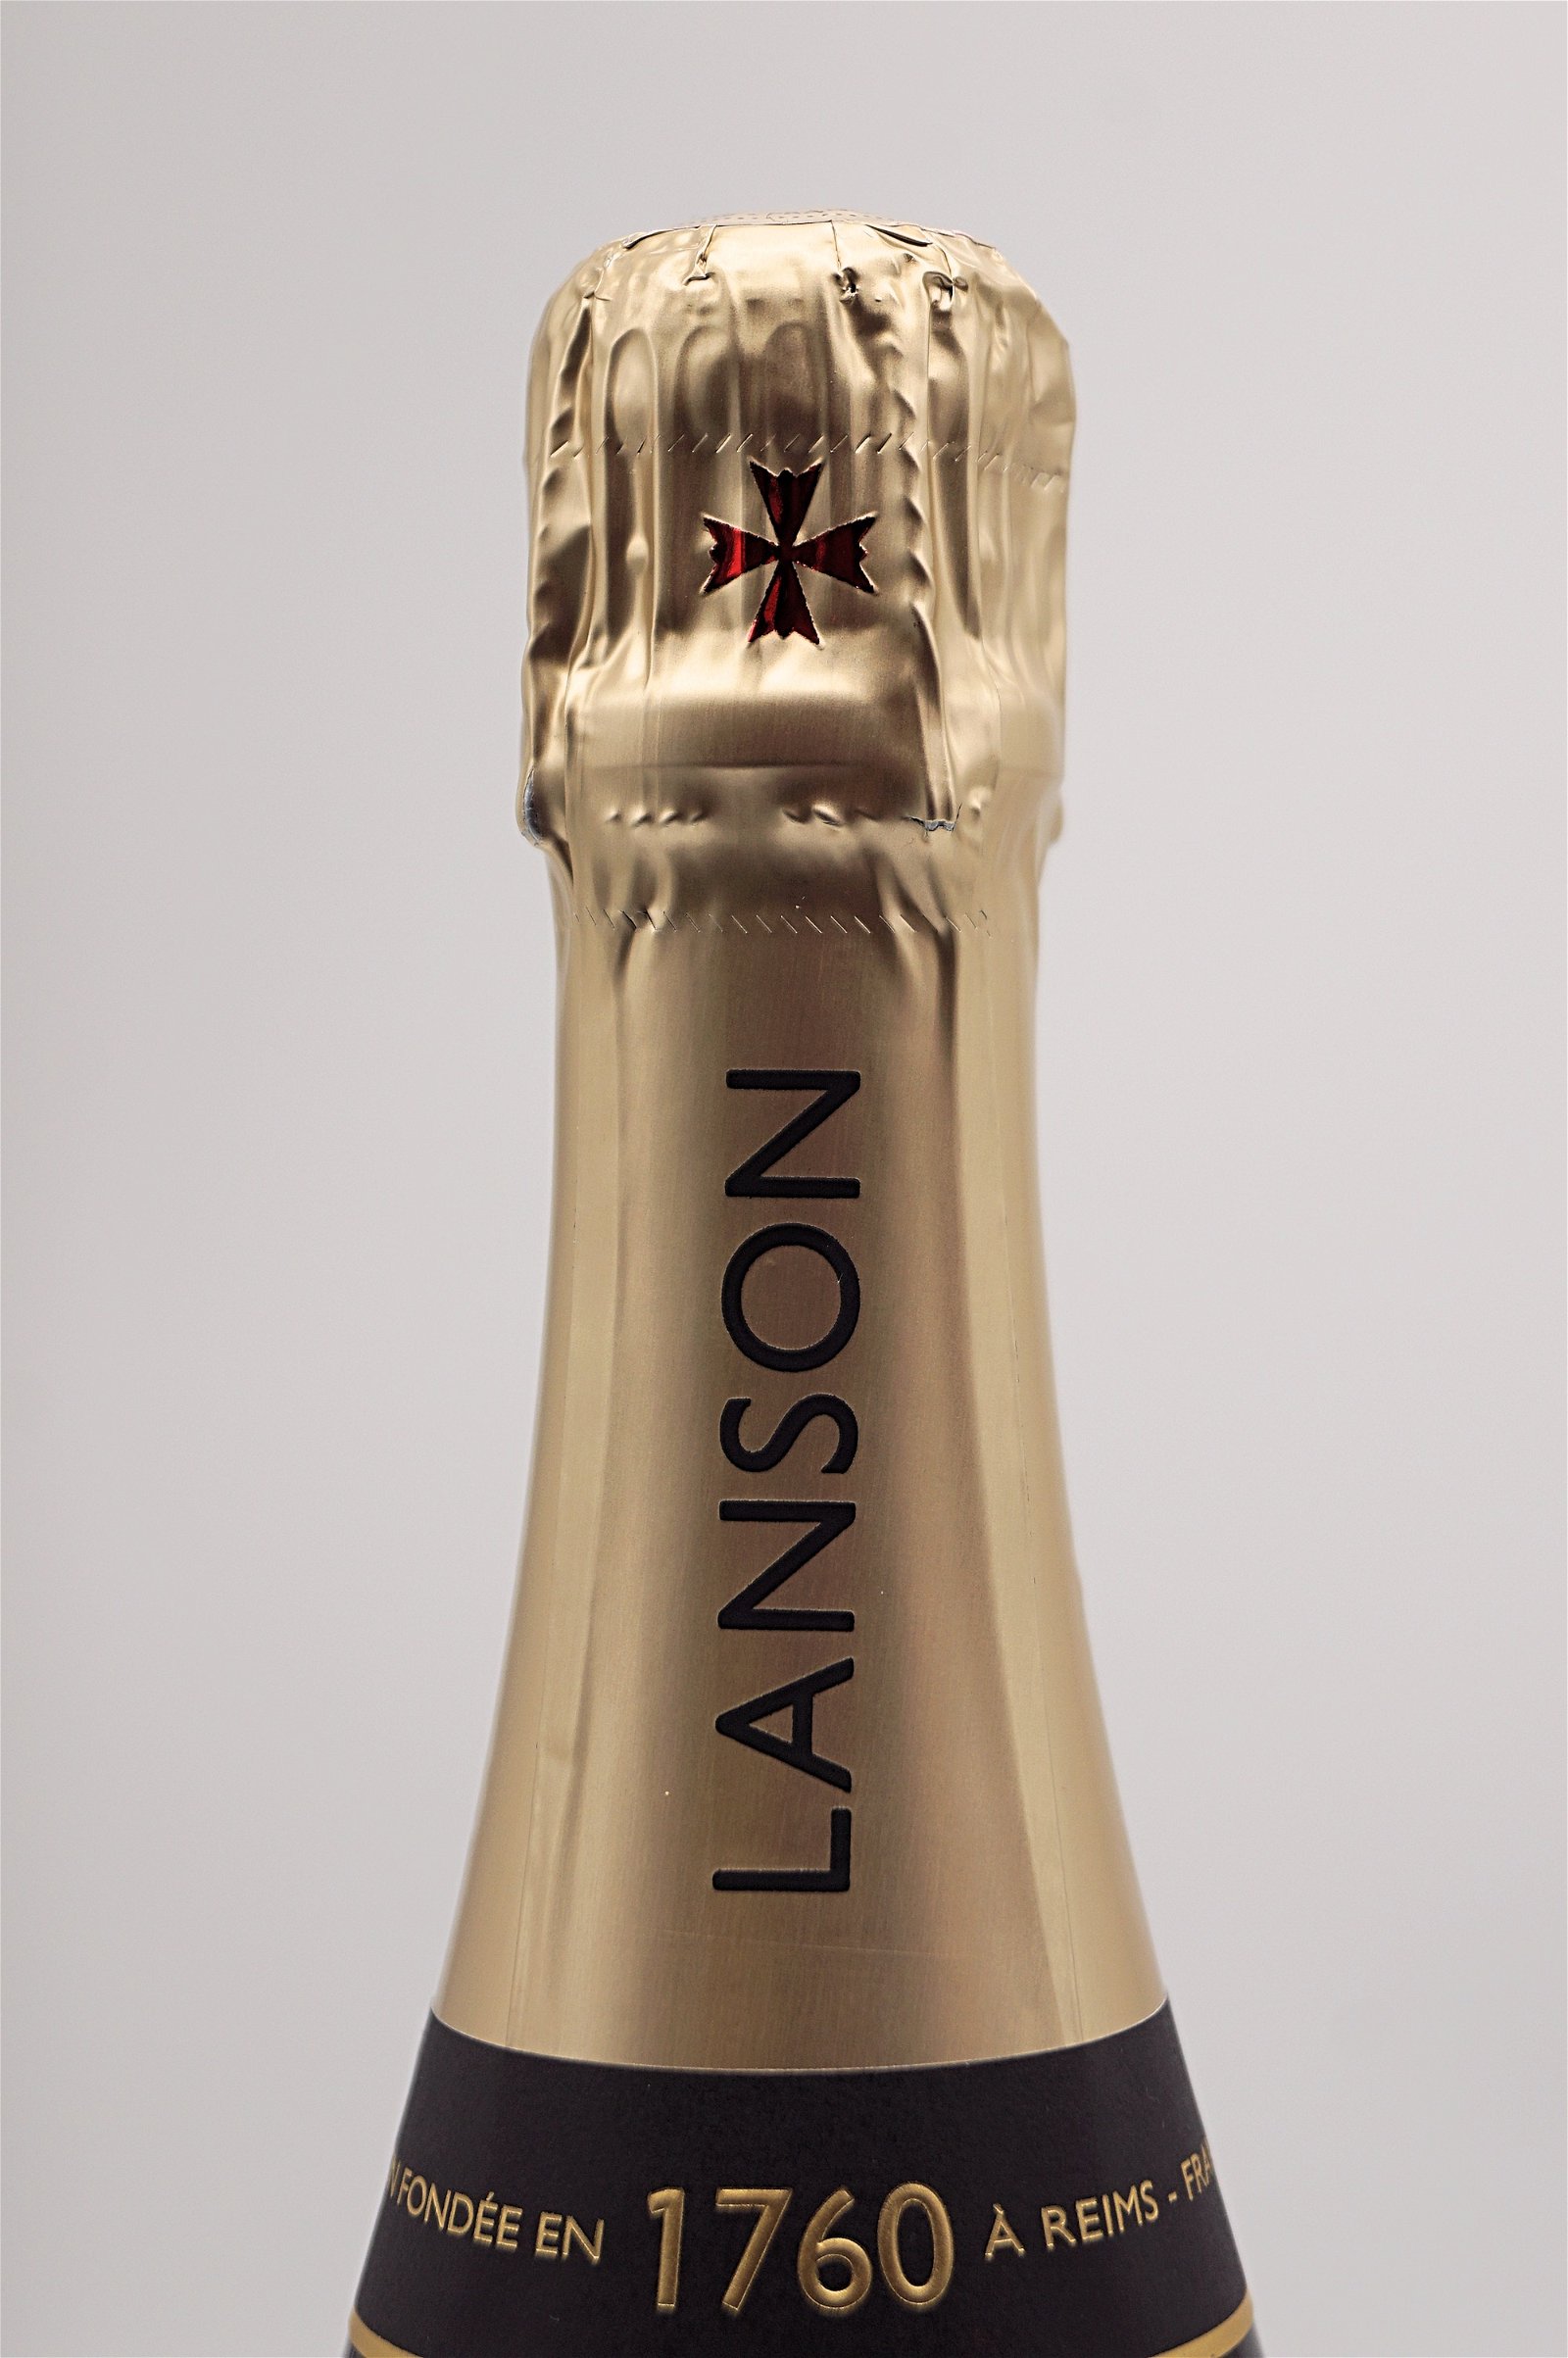 Lanson Champagner Le Black Label Brut 6 Flaschen Sparset